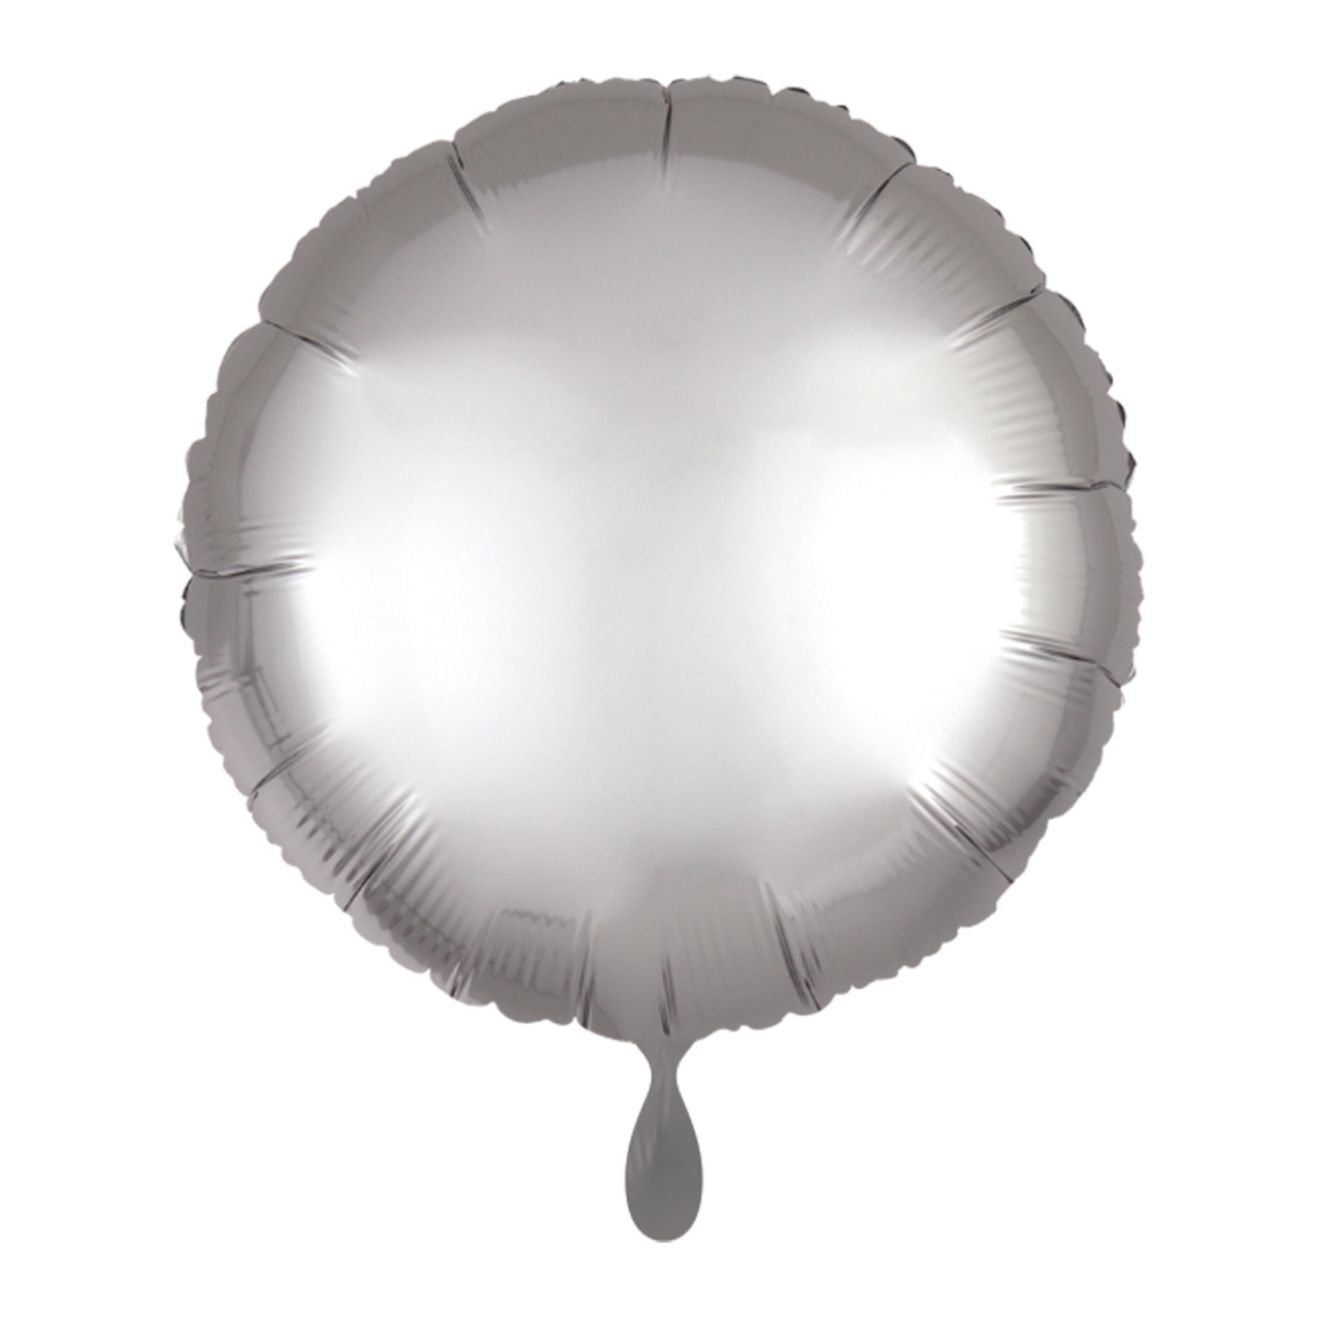 100 Ballons - Rund - Satin - Silber